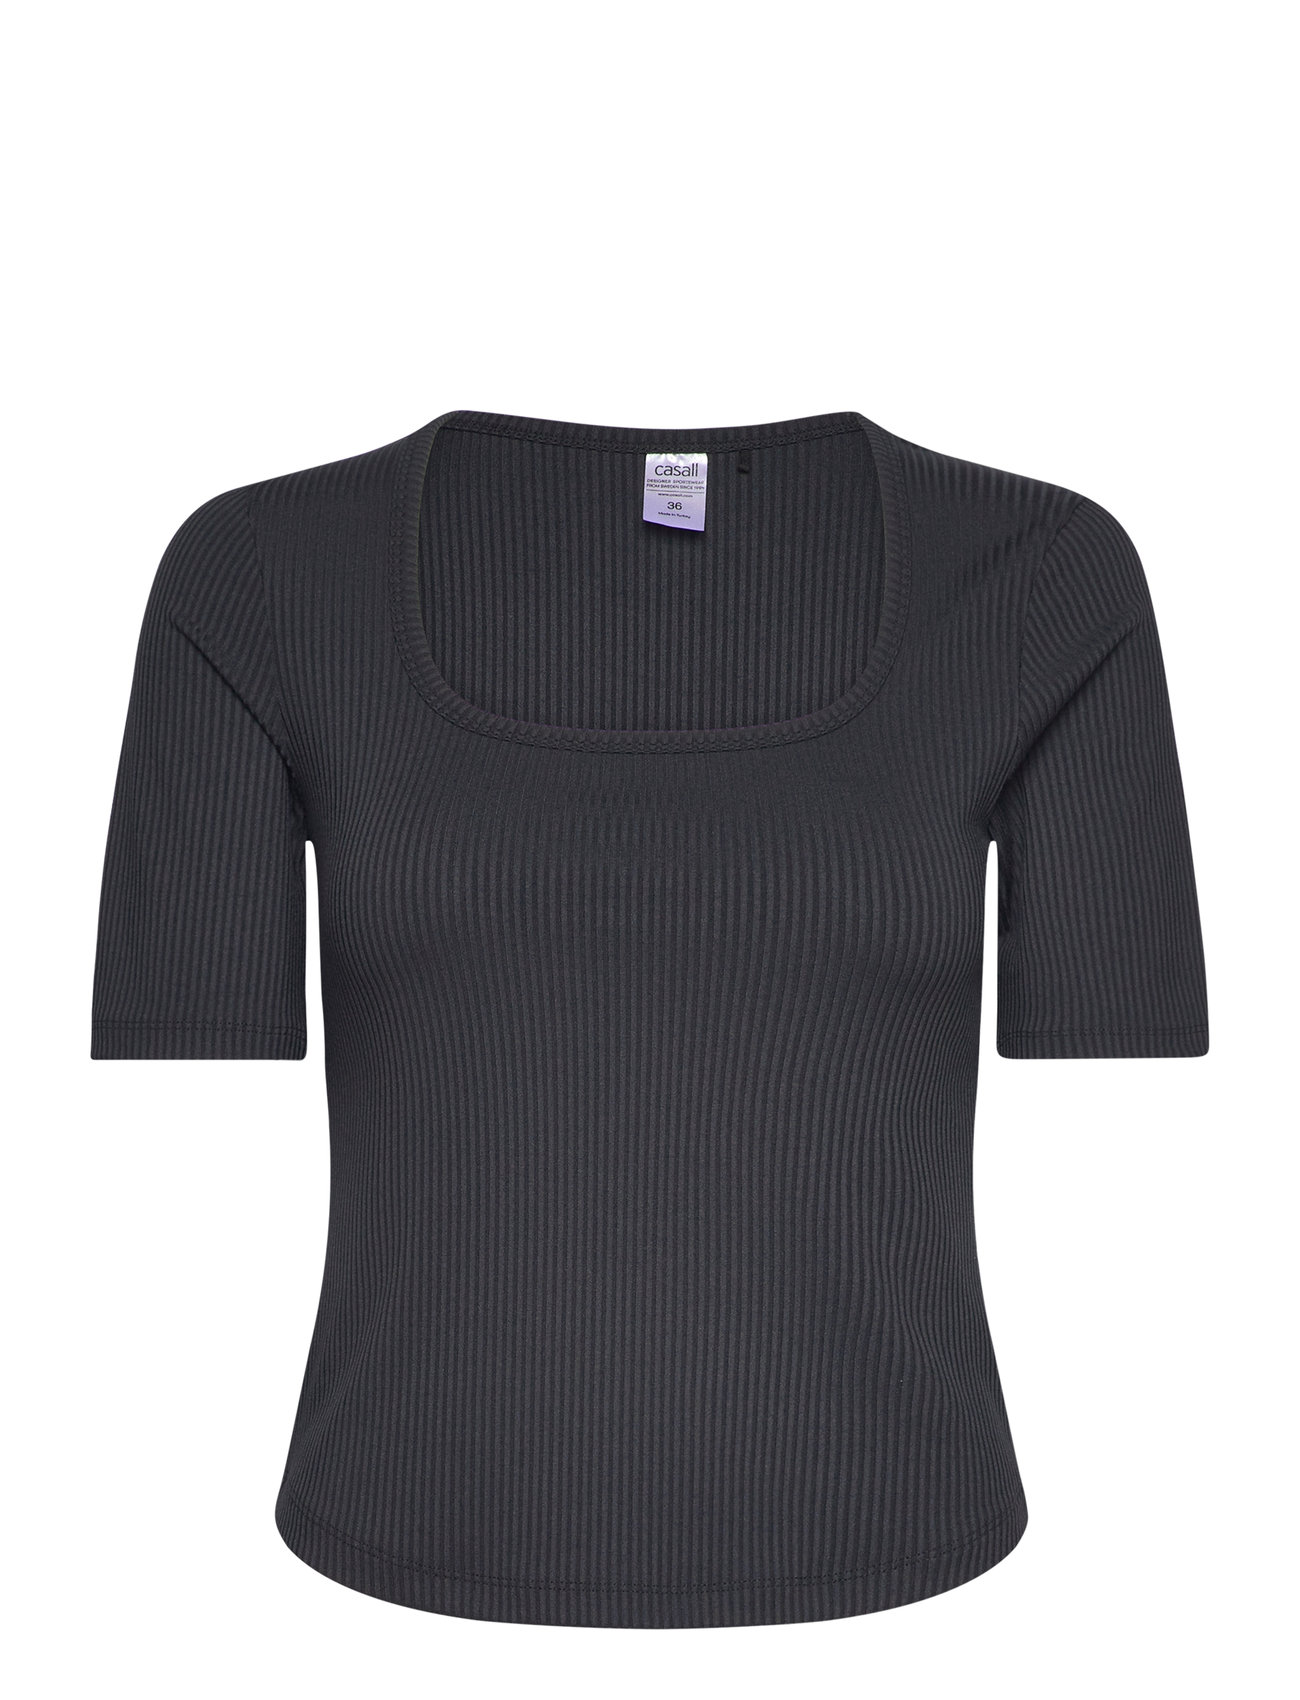 Scoop Rib Tee Sport T-shirts & Tops Short-sleeved Black Casall